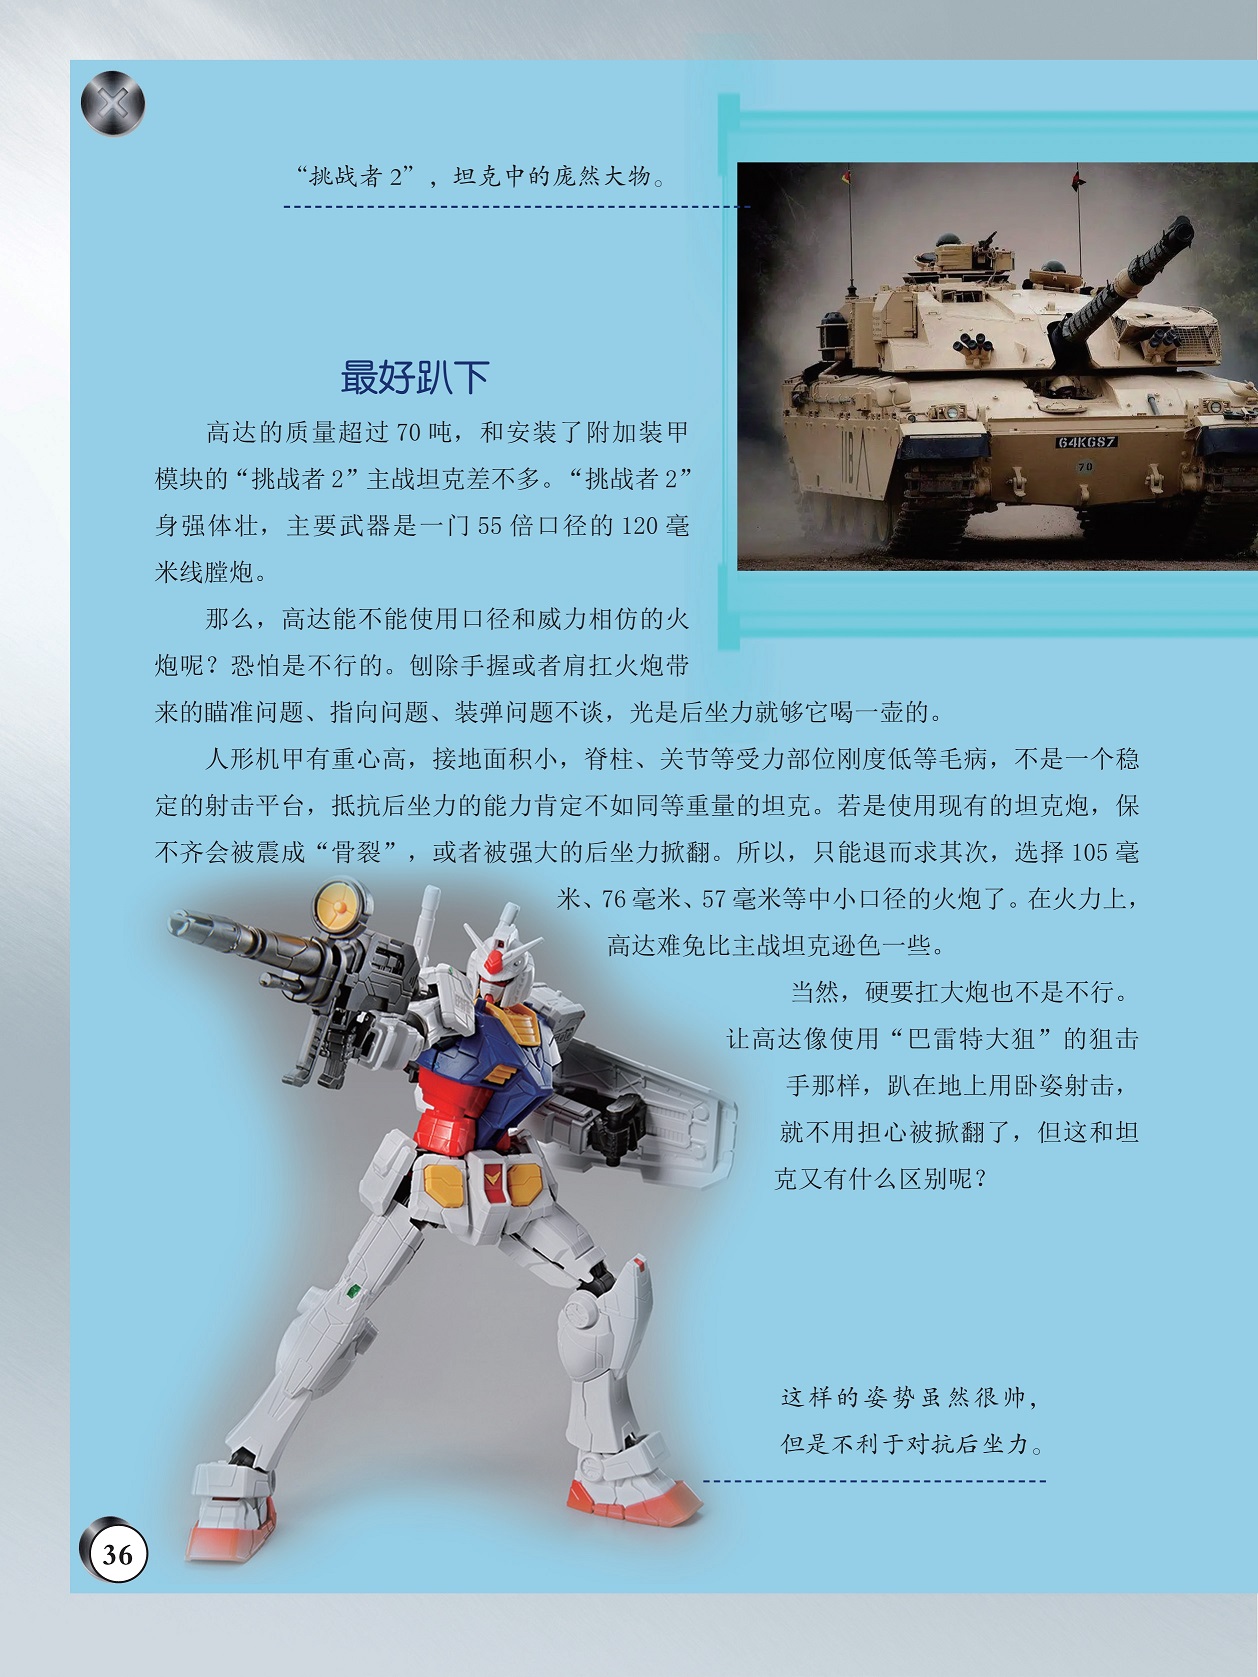 人形机甲有重心高接地面积小,高达难免比主战坦克逊色一些